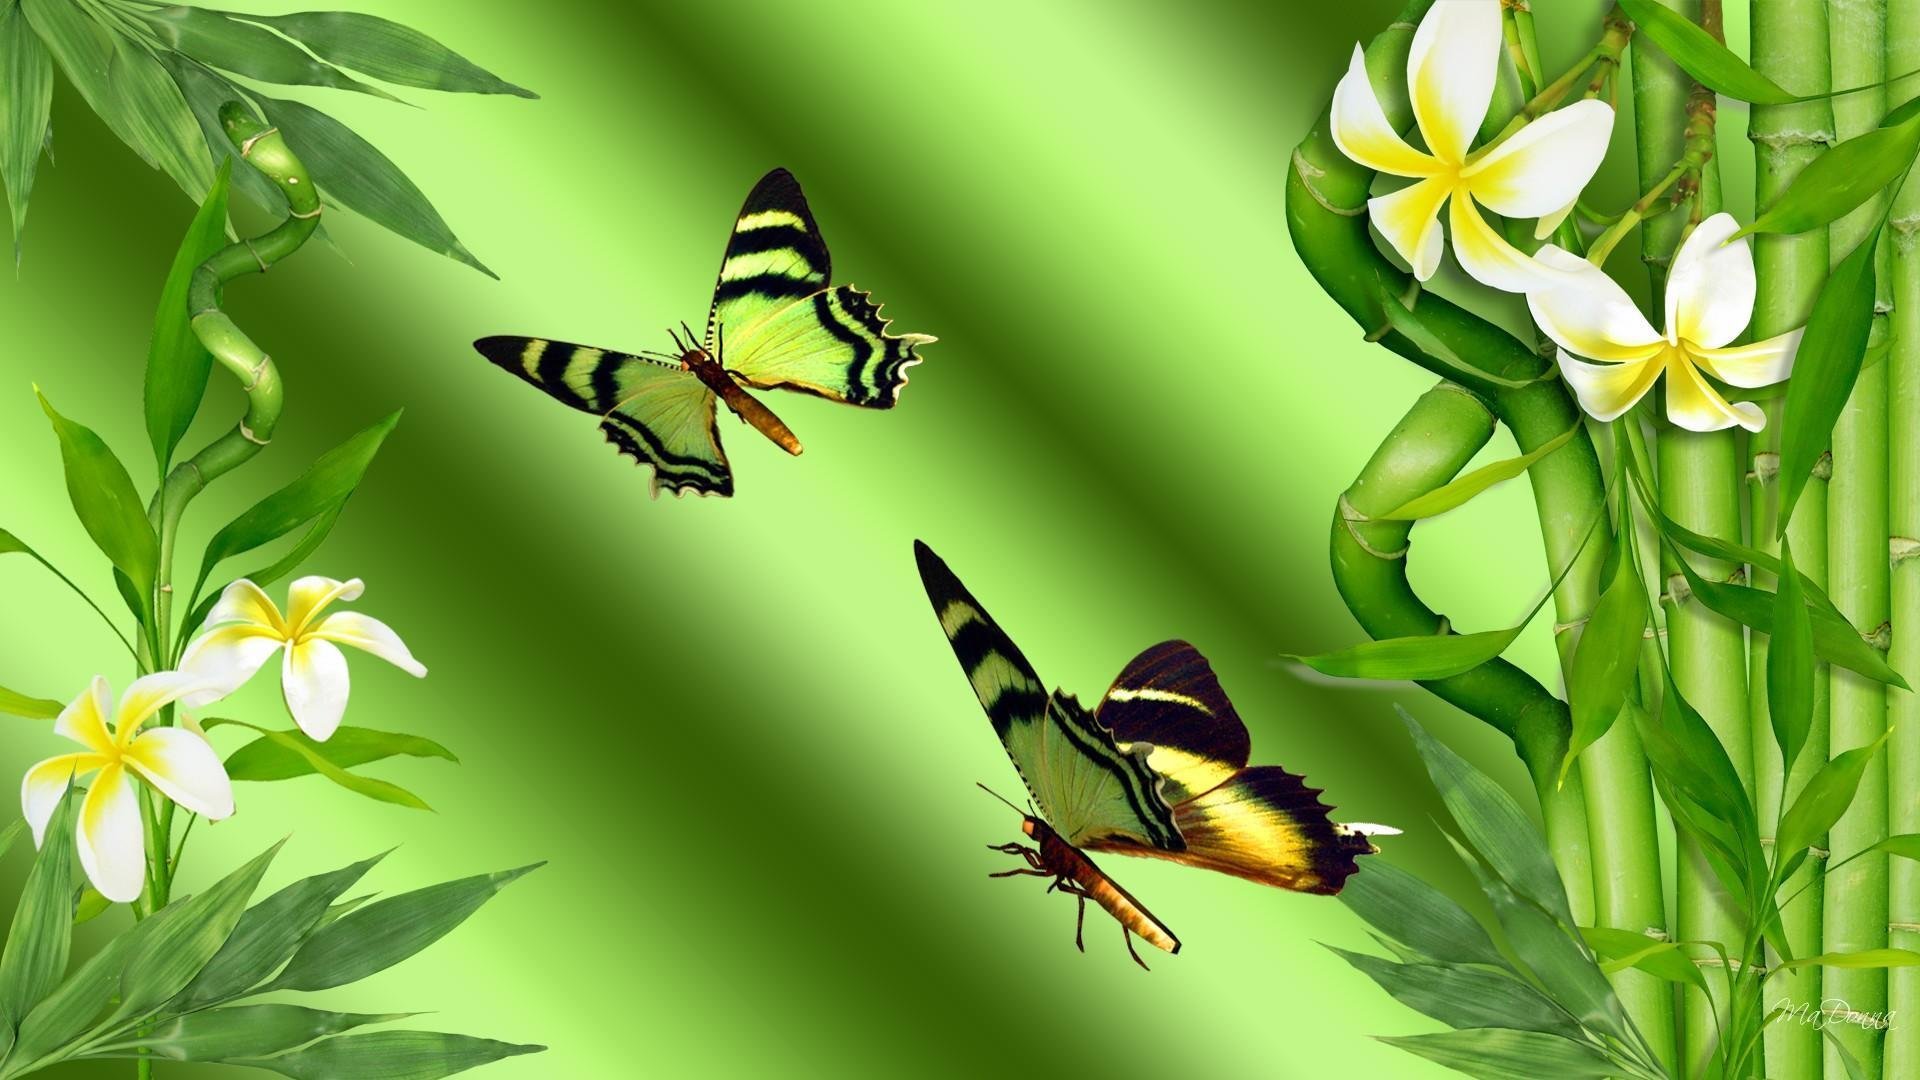 Обои на стол бабочки. Обои на рабочий стол бабочки. Бабочки в природе. Фотообои бабочки. Красивый фон с бабочками.